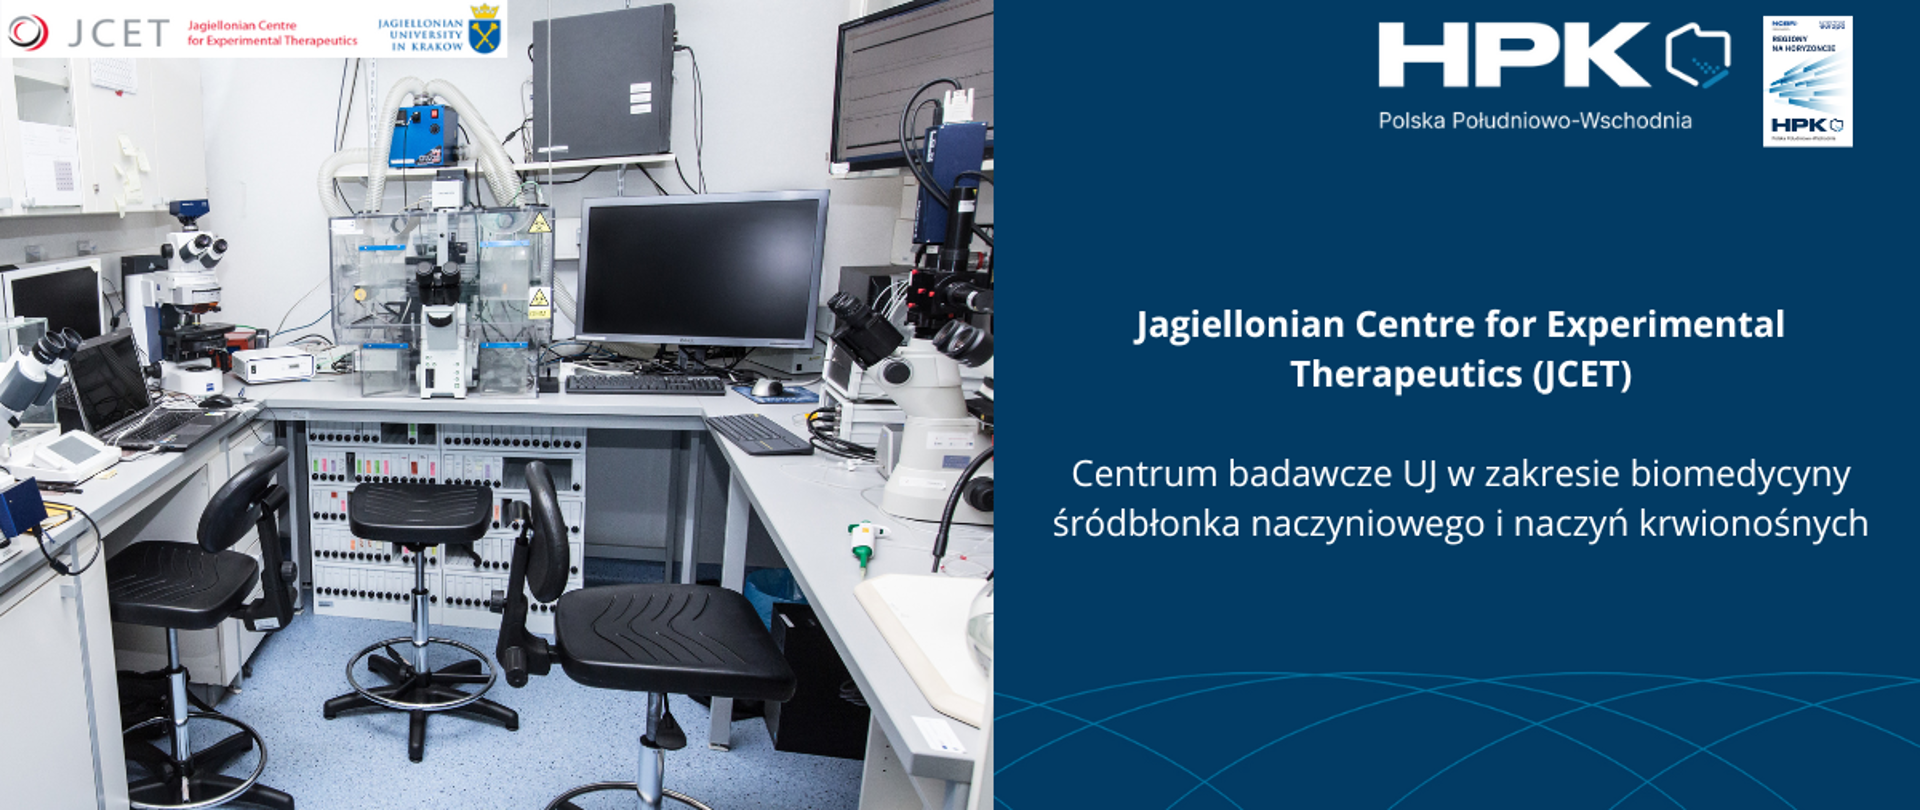 Jagiellonian Centre for Experimental Therapeutics, czyli centrum badawcze UJ zajmujące się badaniami w zakresie biomedycyny śródbłonka naczyniowego i naczyń krwionośnych